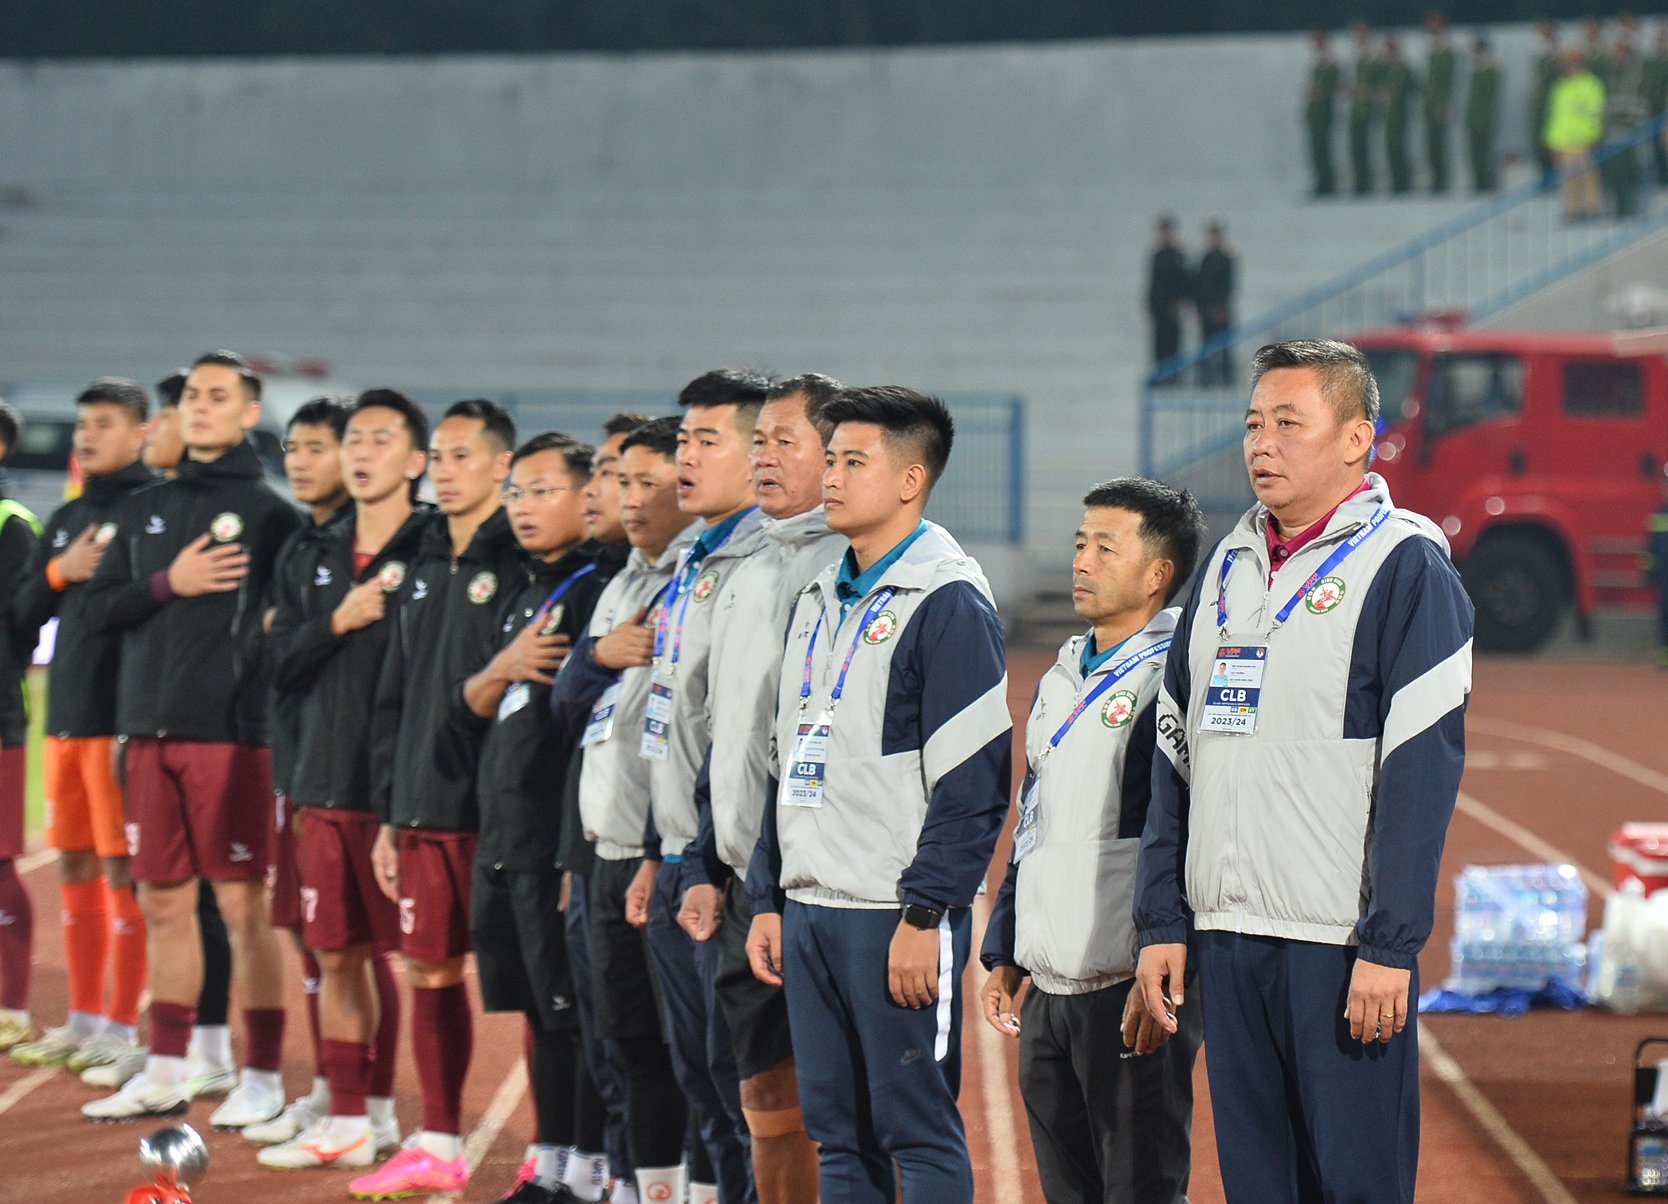 HLV Bùi Đoàn Quang Huy (bìa phải) đang giúp đội bóng quê hương lên hương